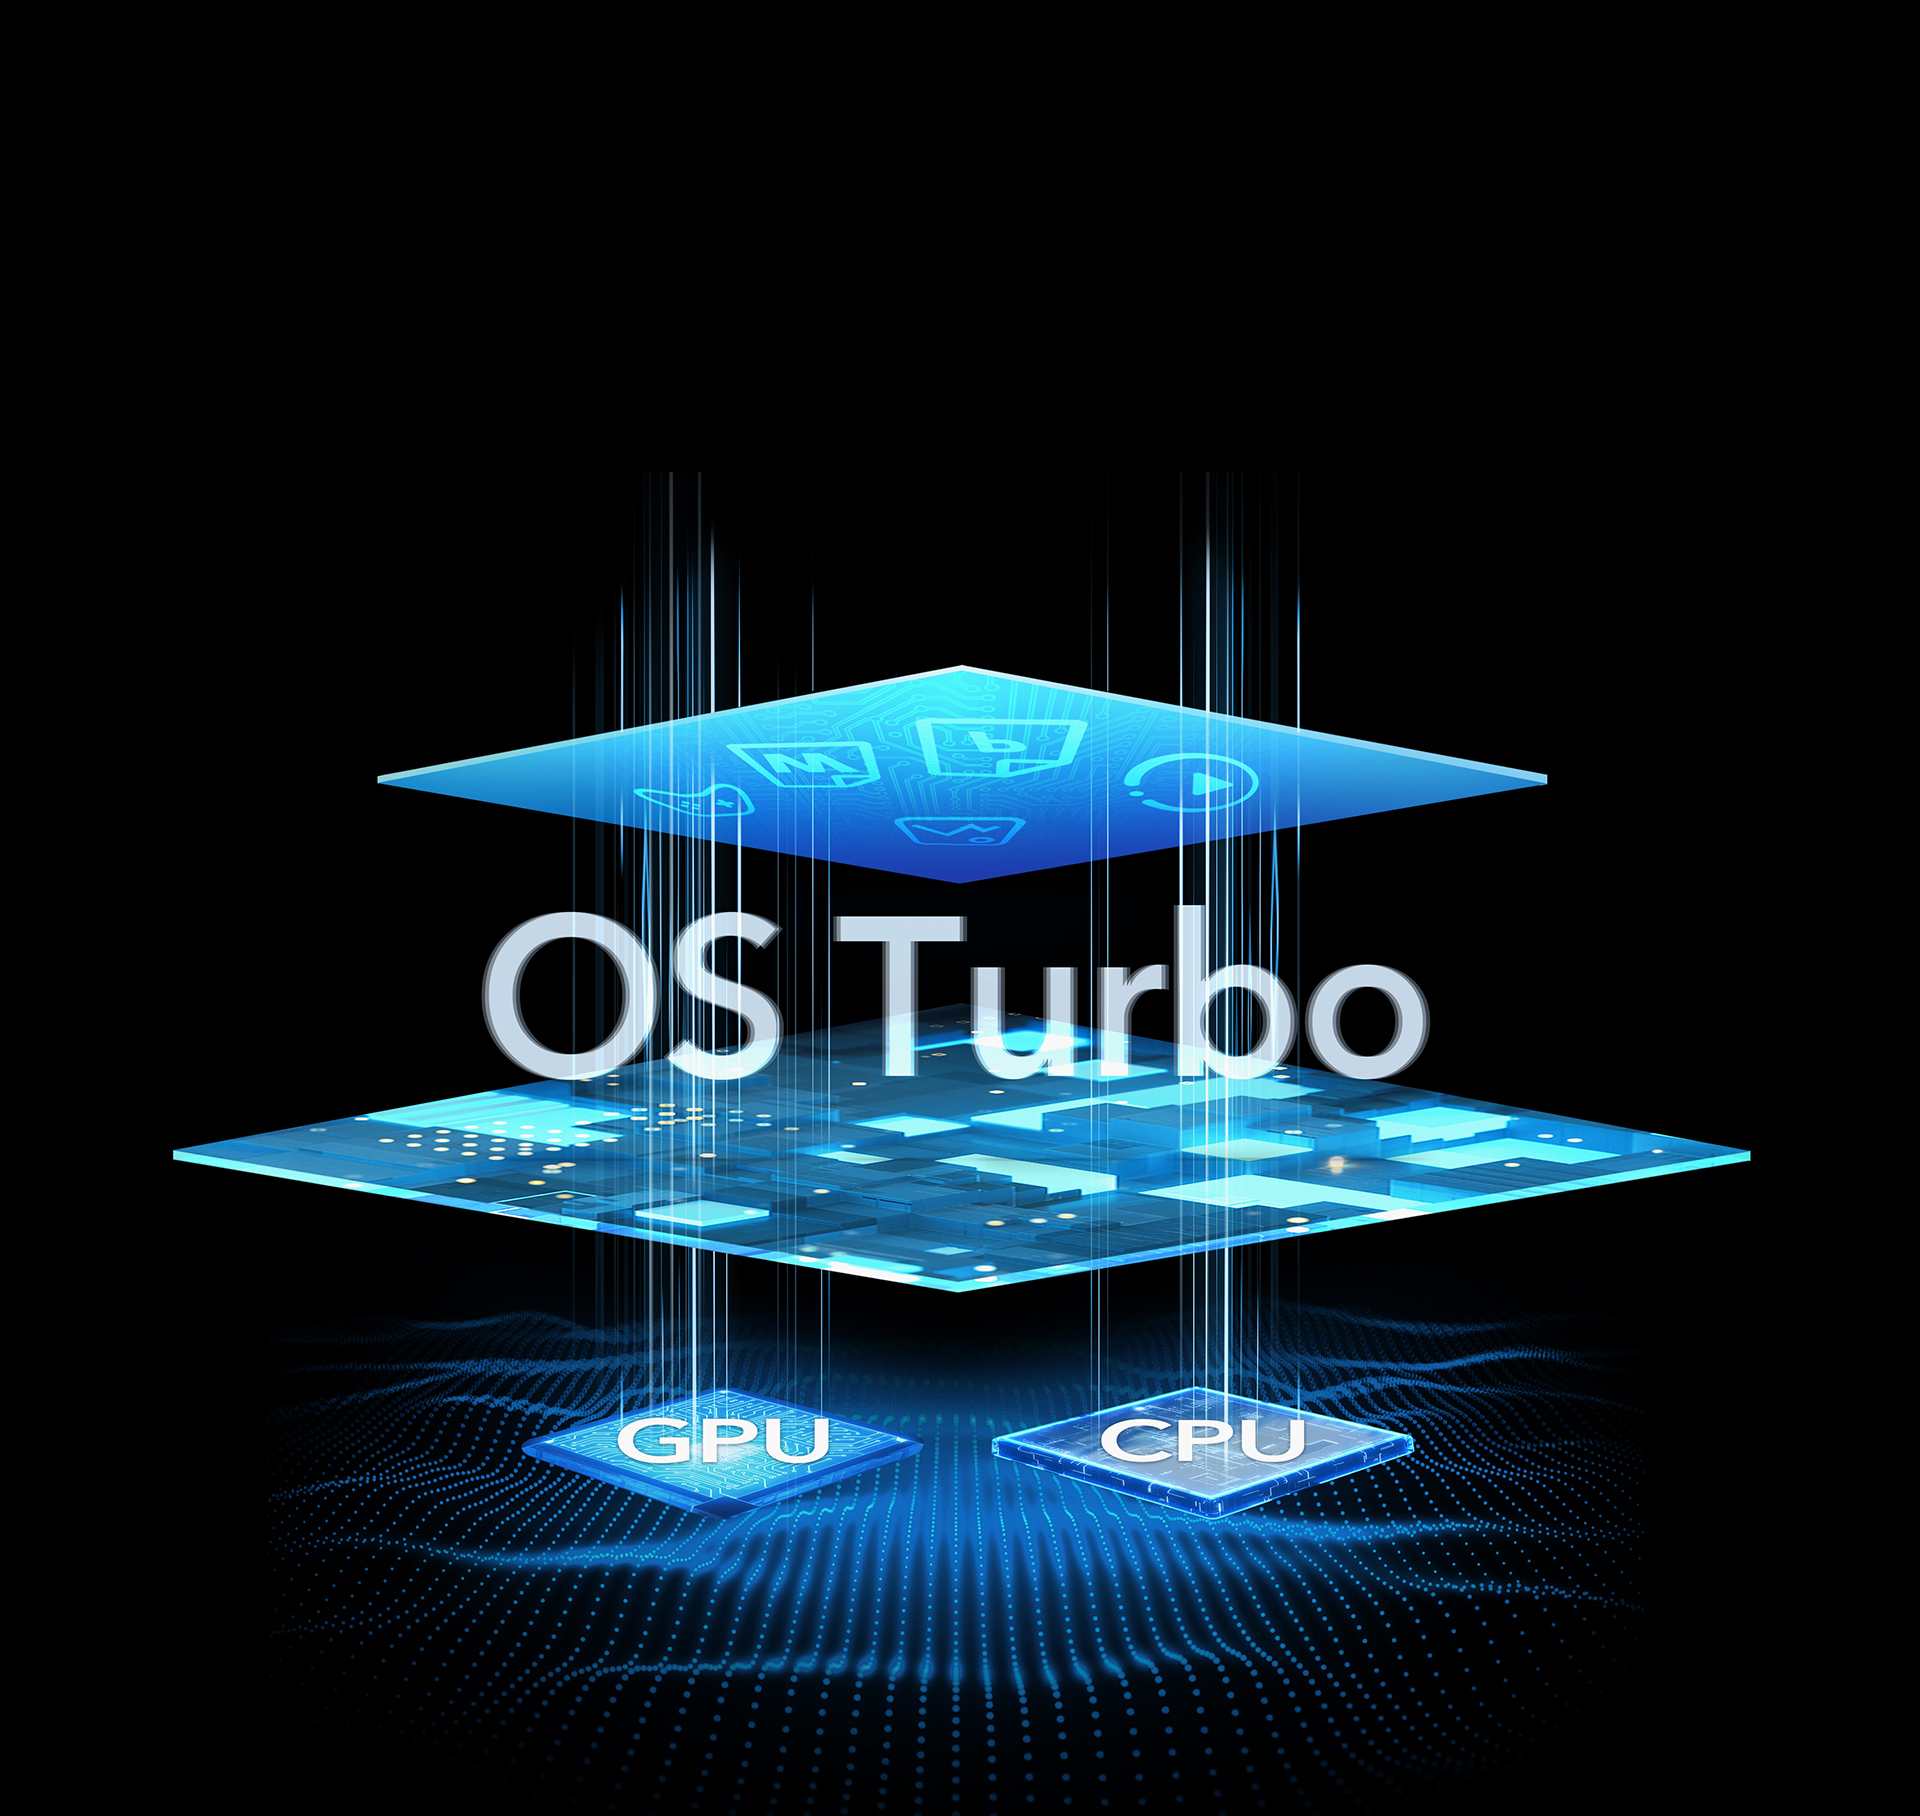 OS Turbo 续航与性能的出色平衡